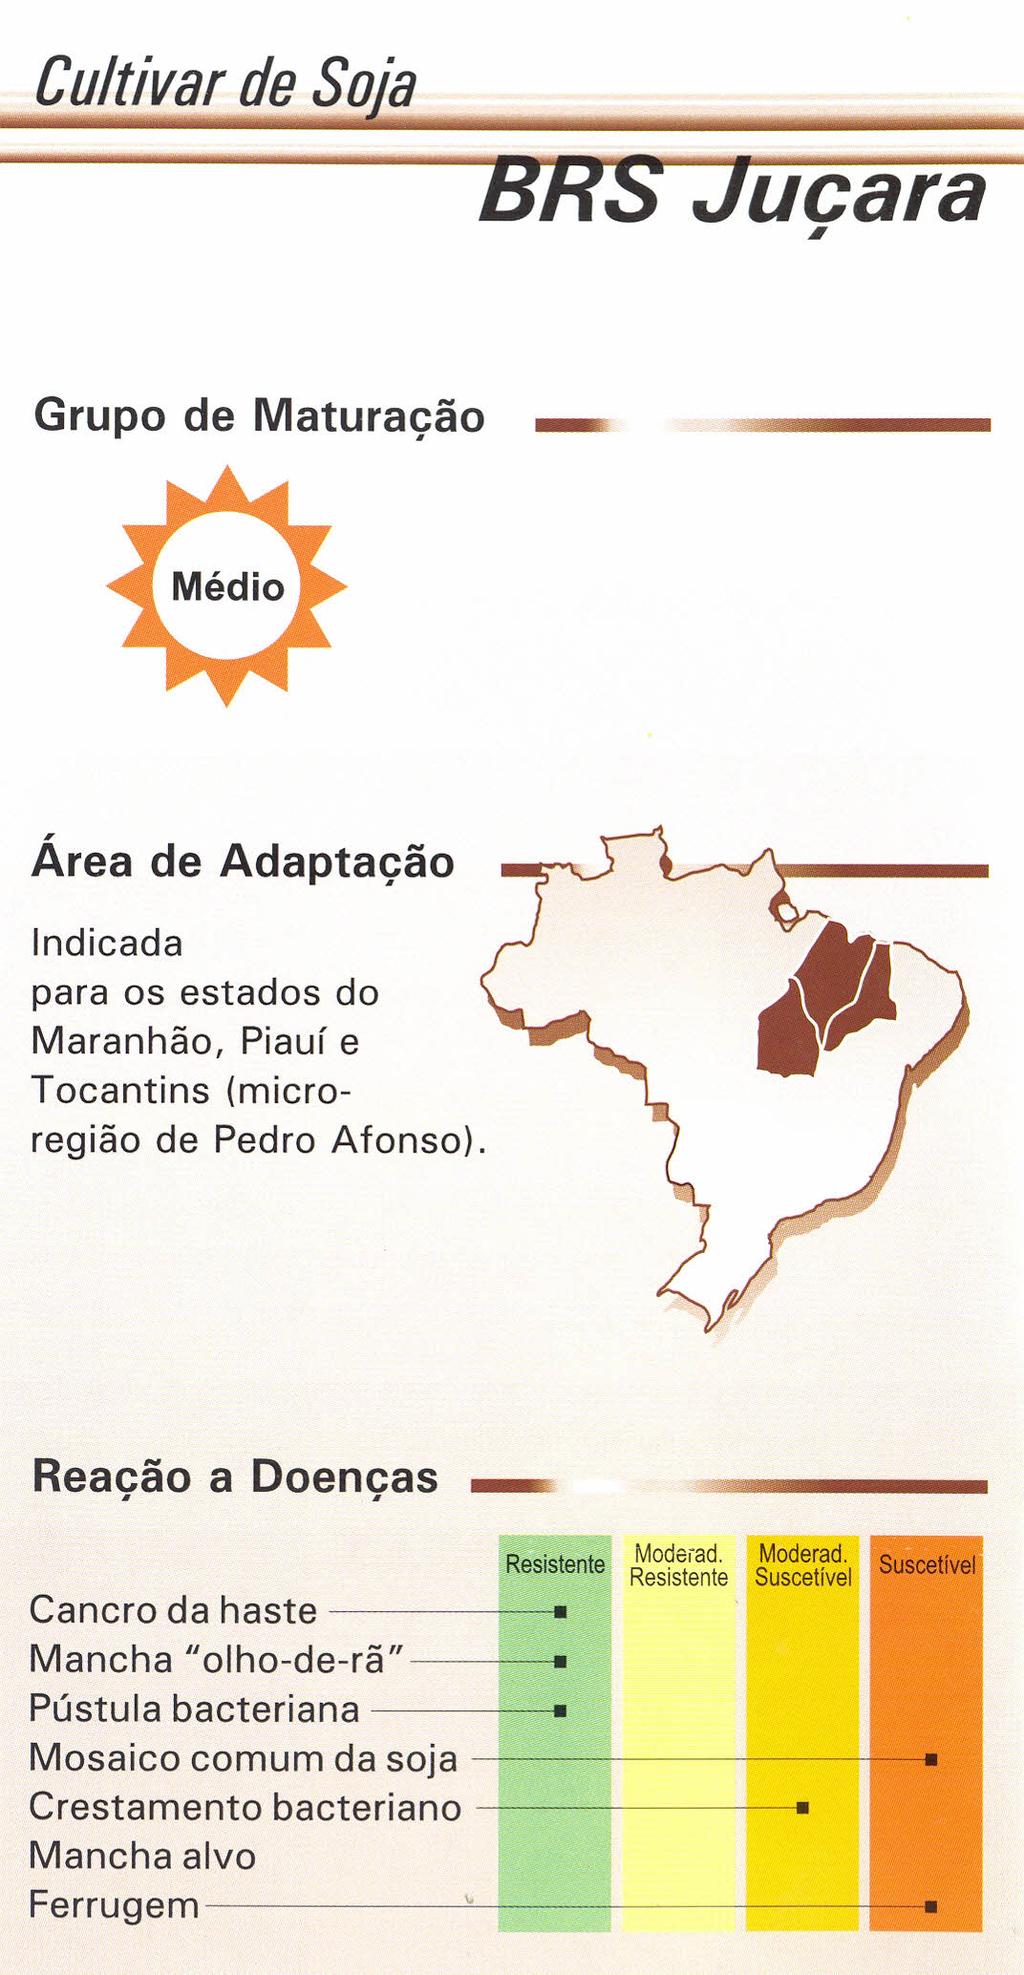 Cultivar de Soja ucara I Grupo de Maturação _ Área de Adaptação Indicada para os estados do Maranhão, Piauí e Tocantins (microregião de Pedro Afonso).